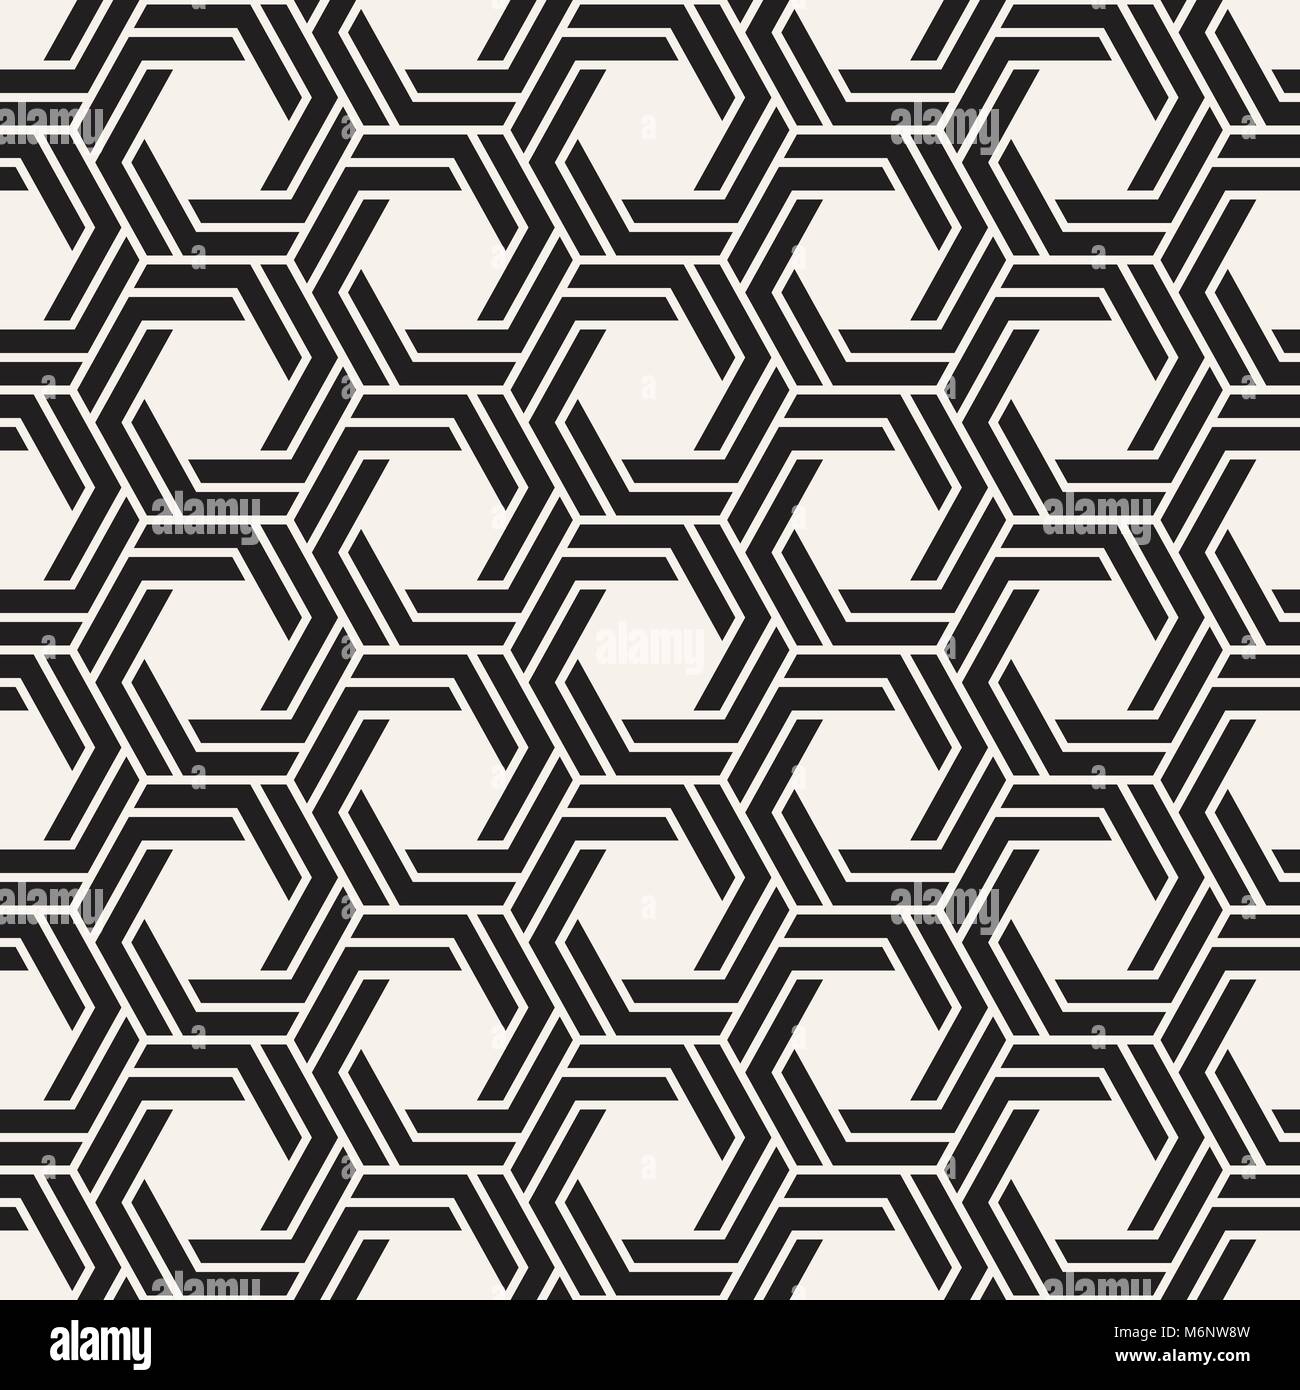 Vektor nahtlose Streifen Muster. Moderne, elegante Textur mit Schwarzweiß-Gitter. Wiederkehrende geometrische hexagonalen Gitter. Einfache lattice Design. Stock Vektor